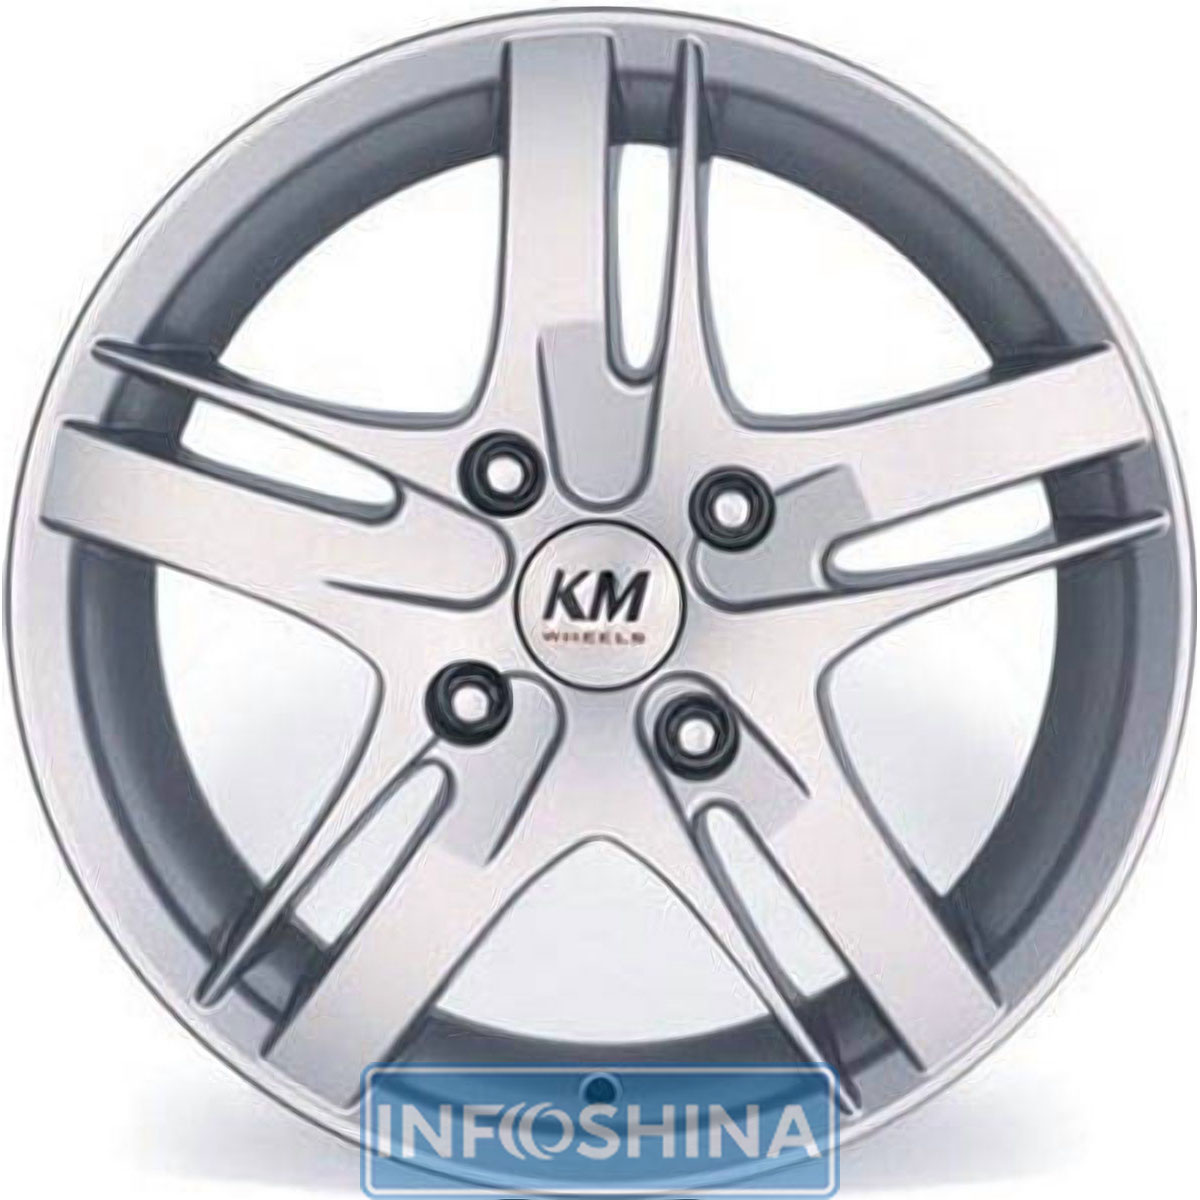 Купить диски Kormetal KM 805 S R15 W6.5 PCD5x114.3 ET40 DIA67.1